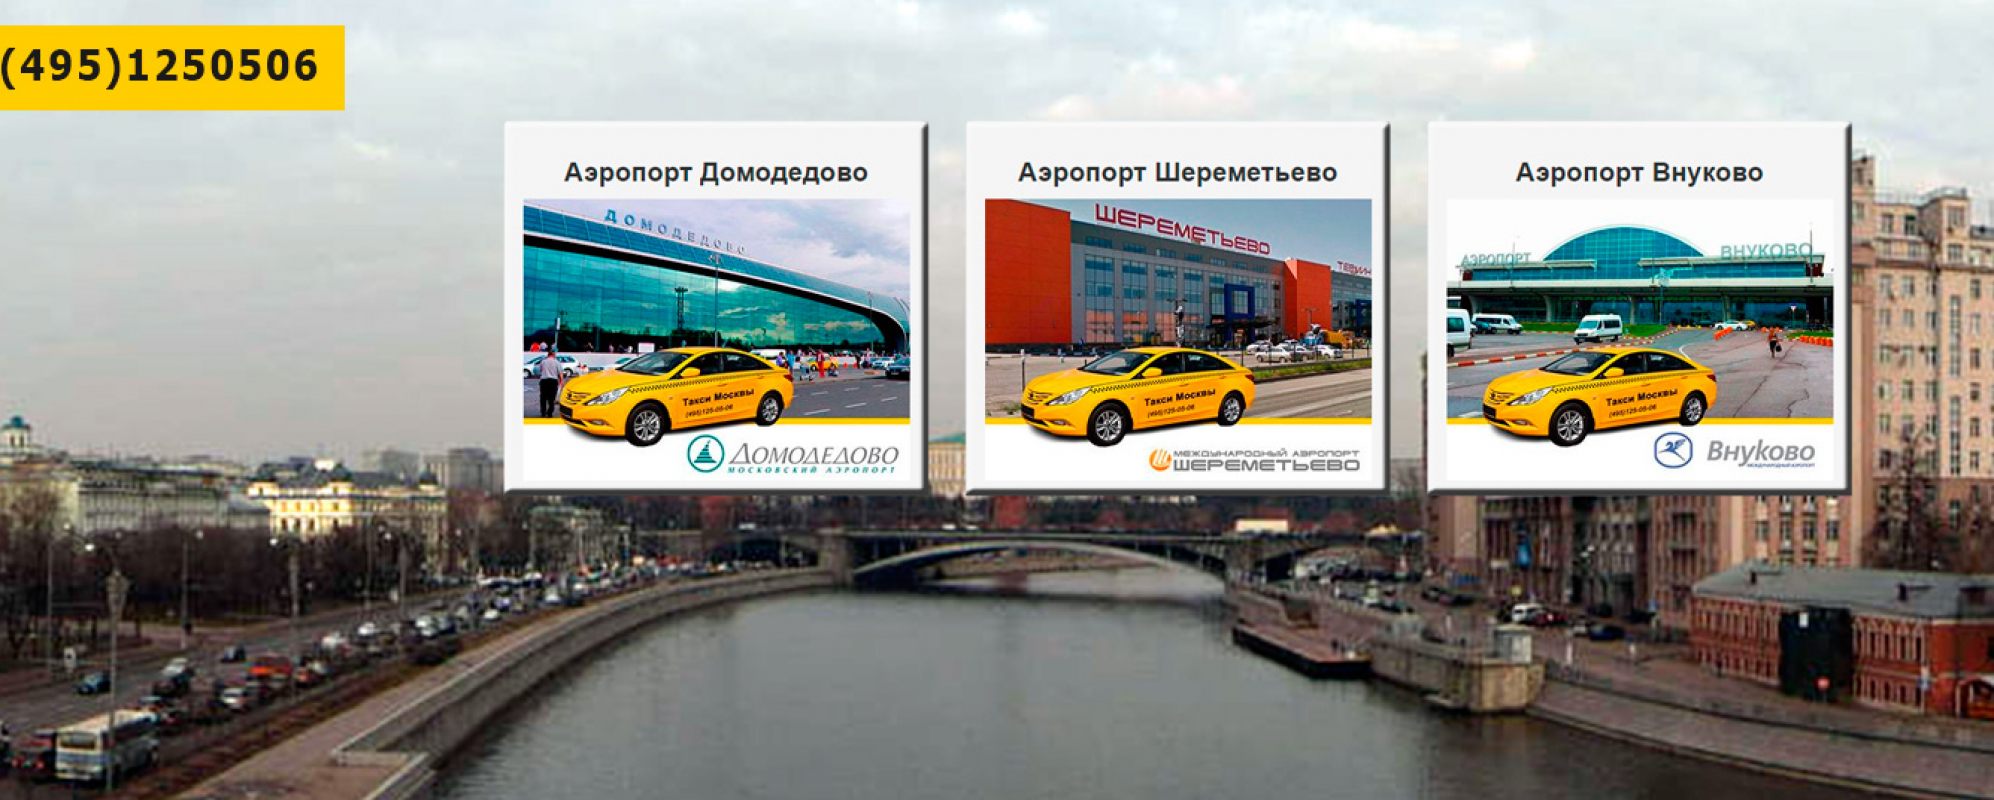 Фотографии такси Такси Москвы